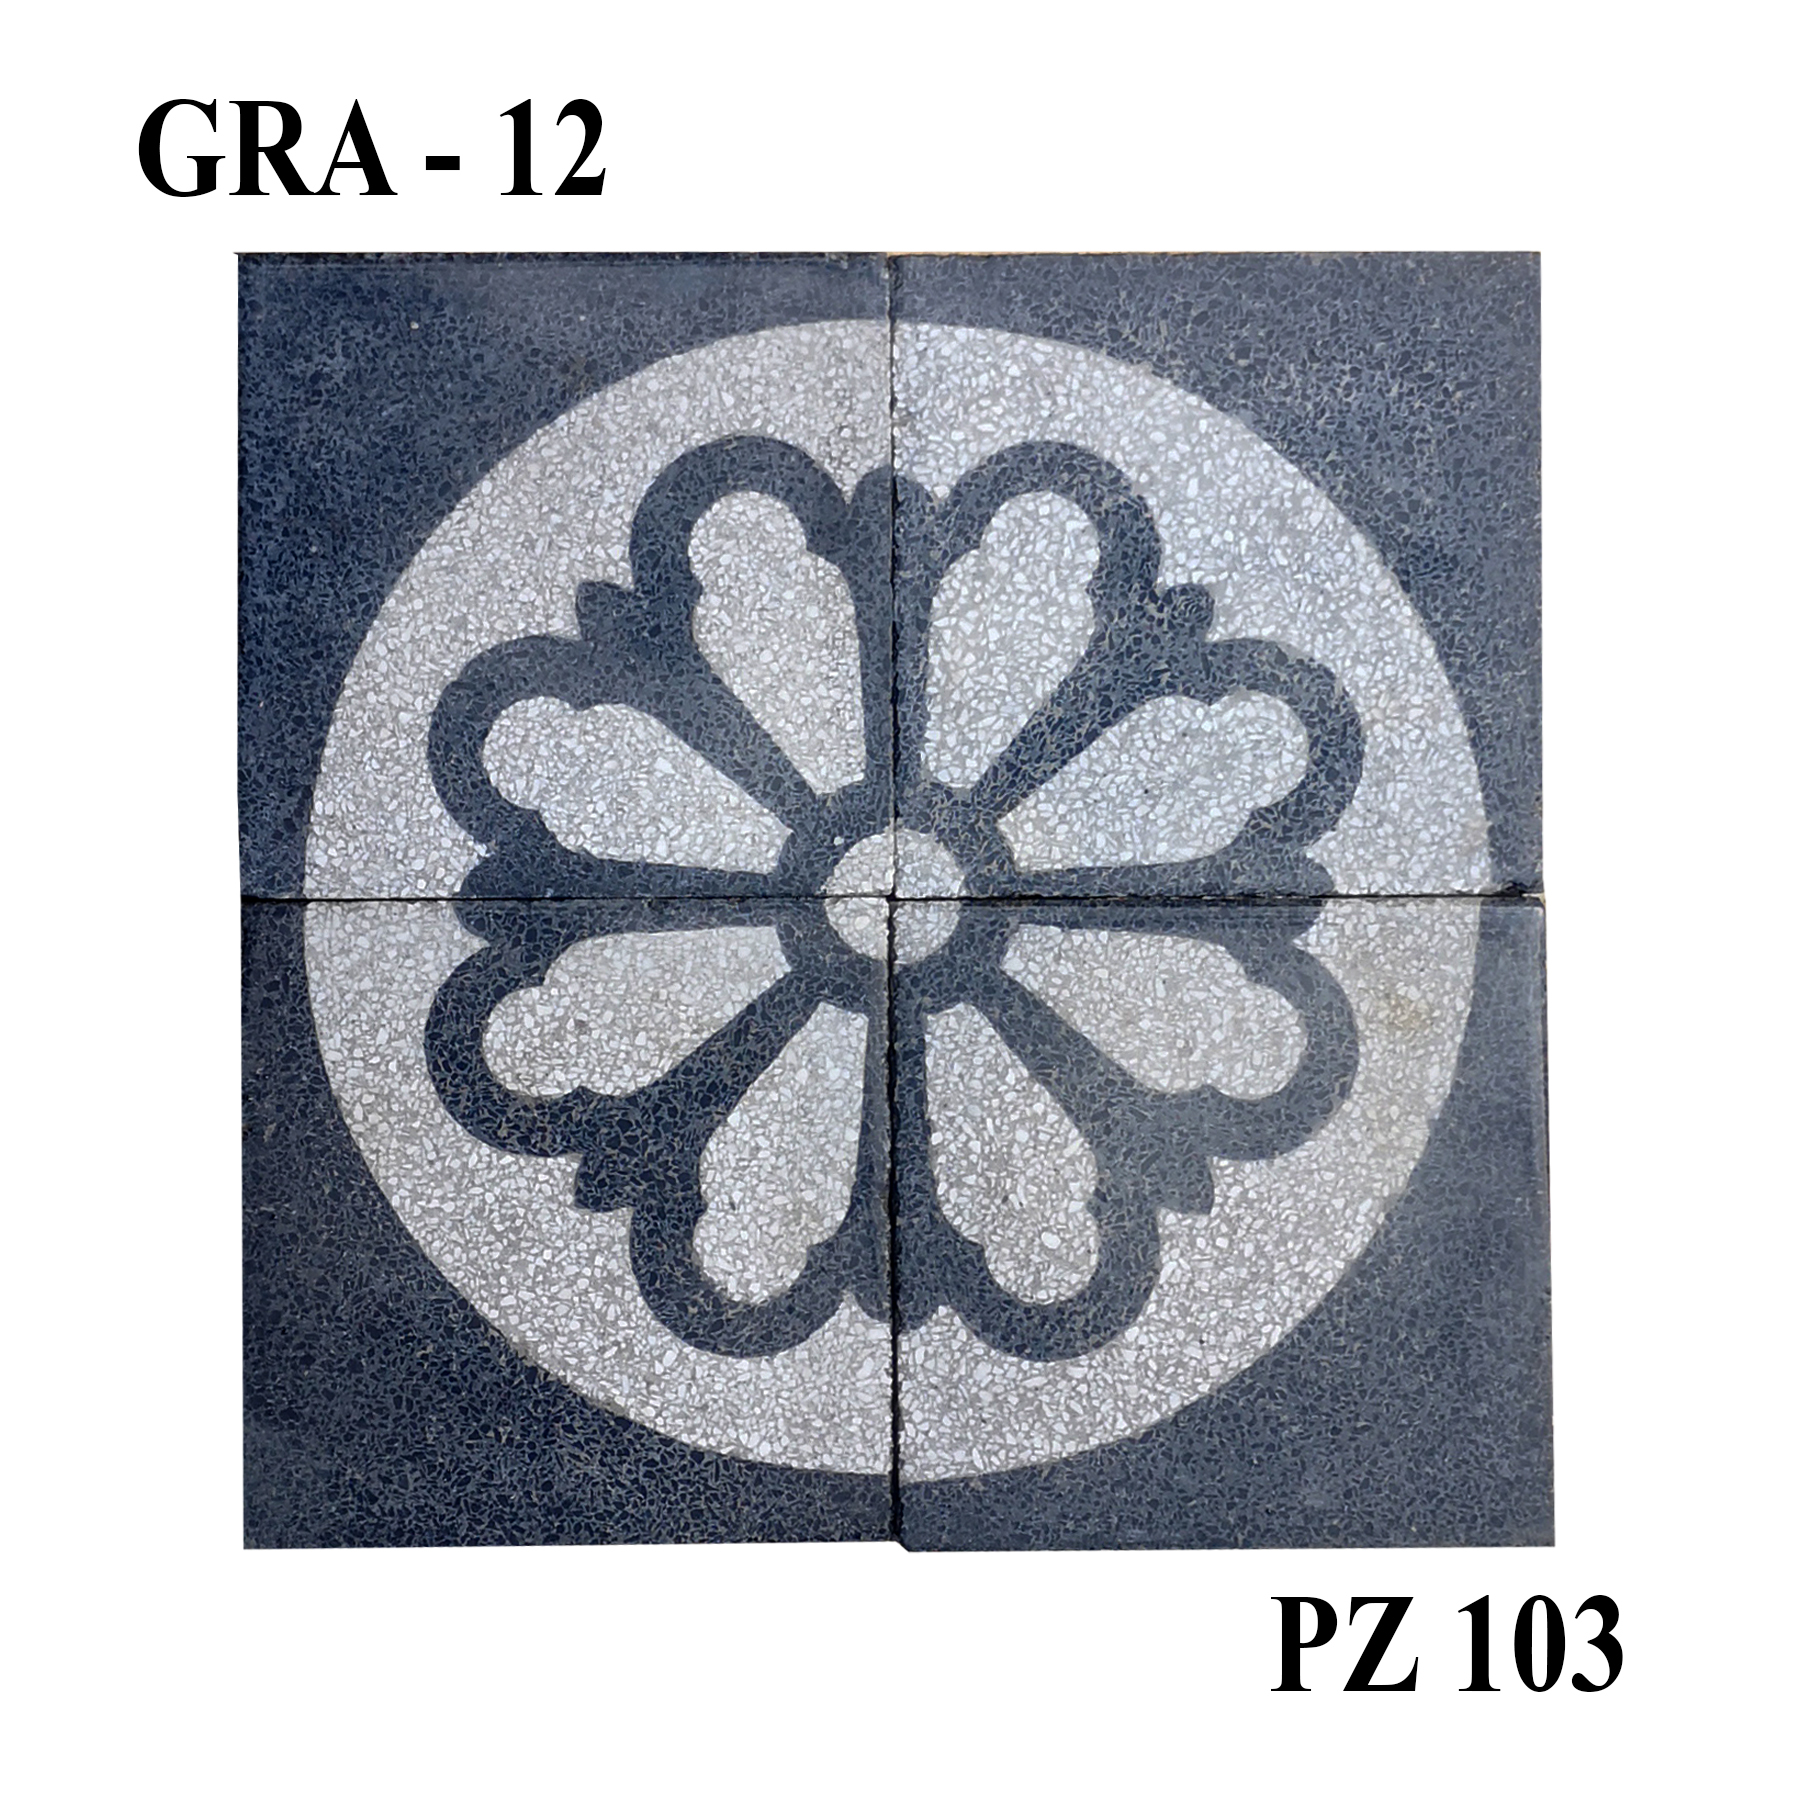 Antica pavimentazione in graniglia. cm20x20 - Cementine e Graniglie - Pavimentazioni Antiche - Prodotti - Antichità Fiorillo